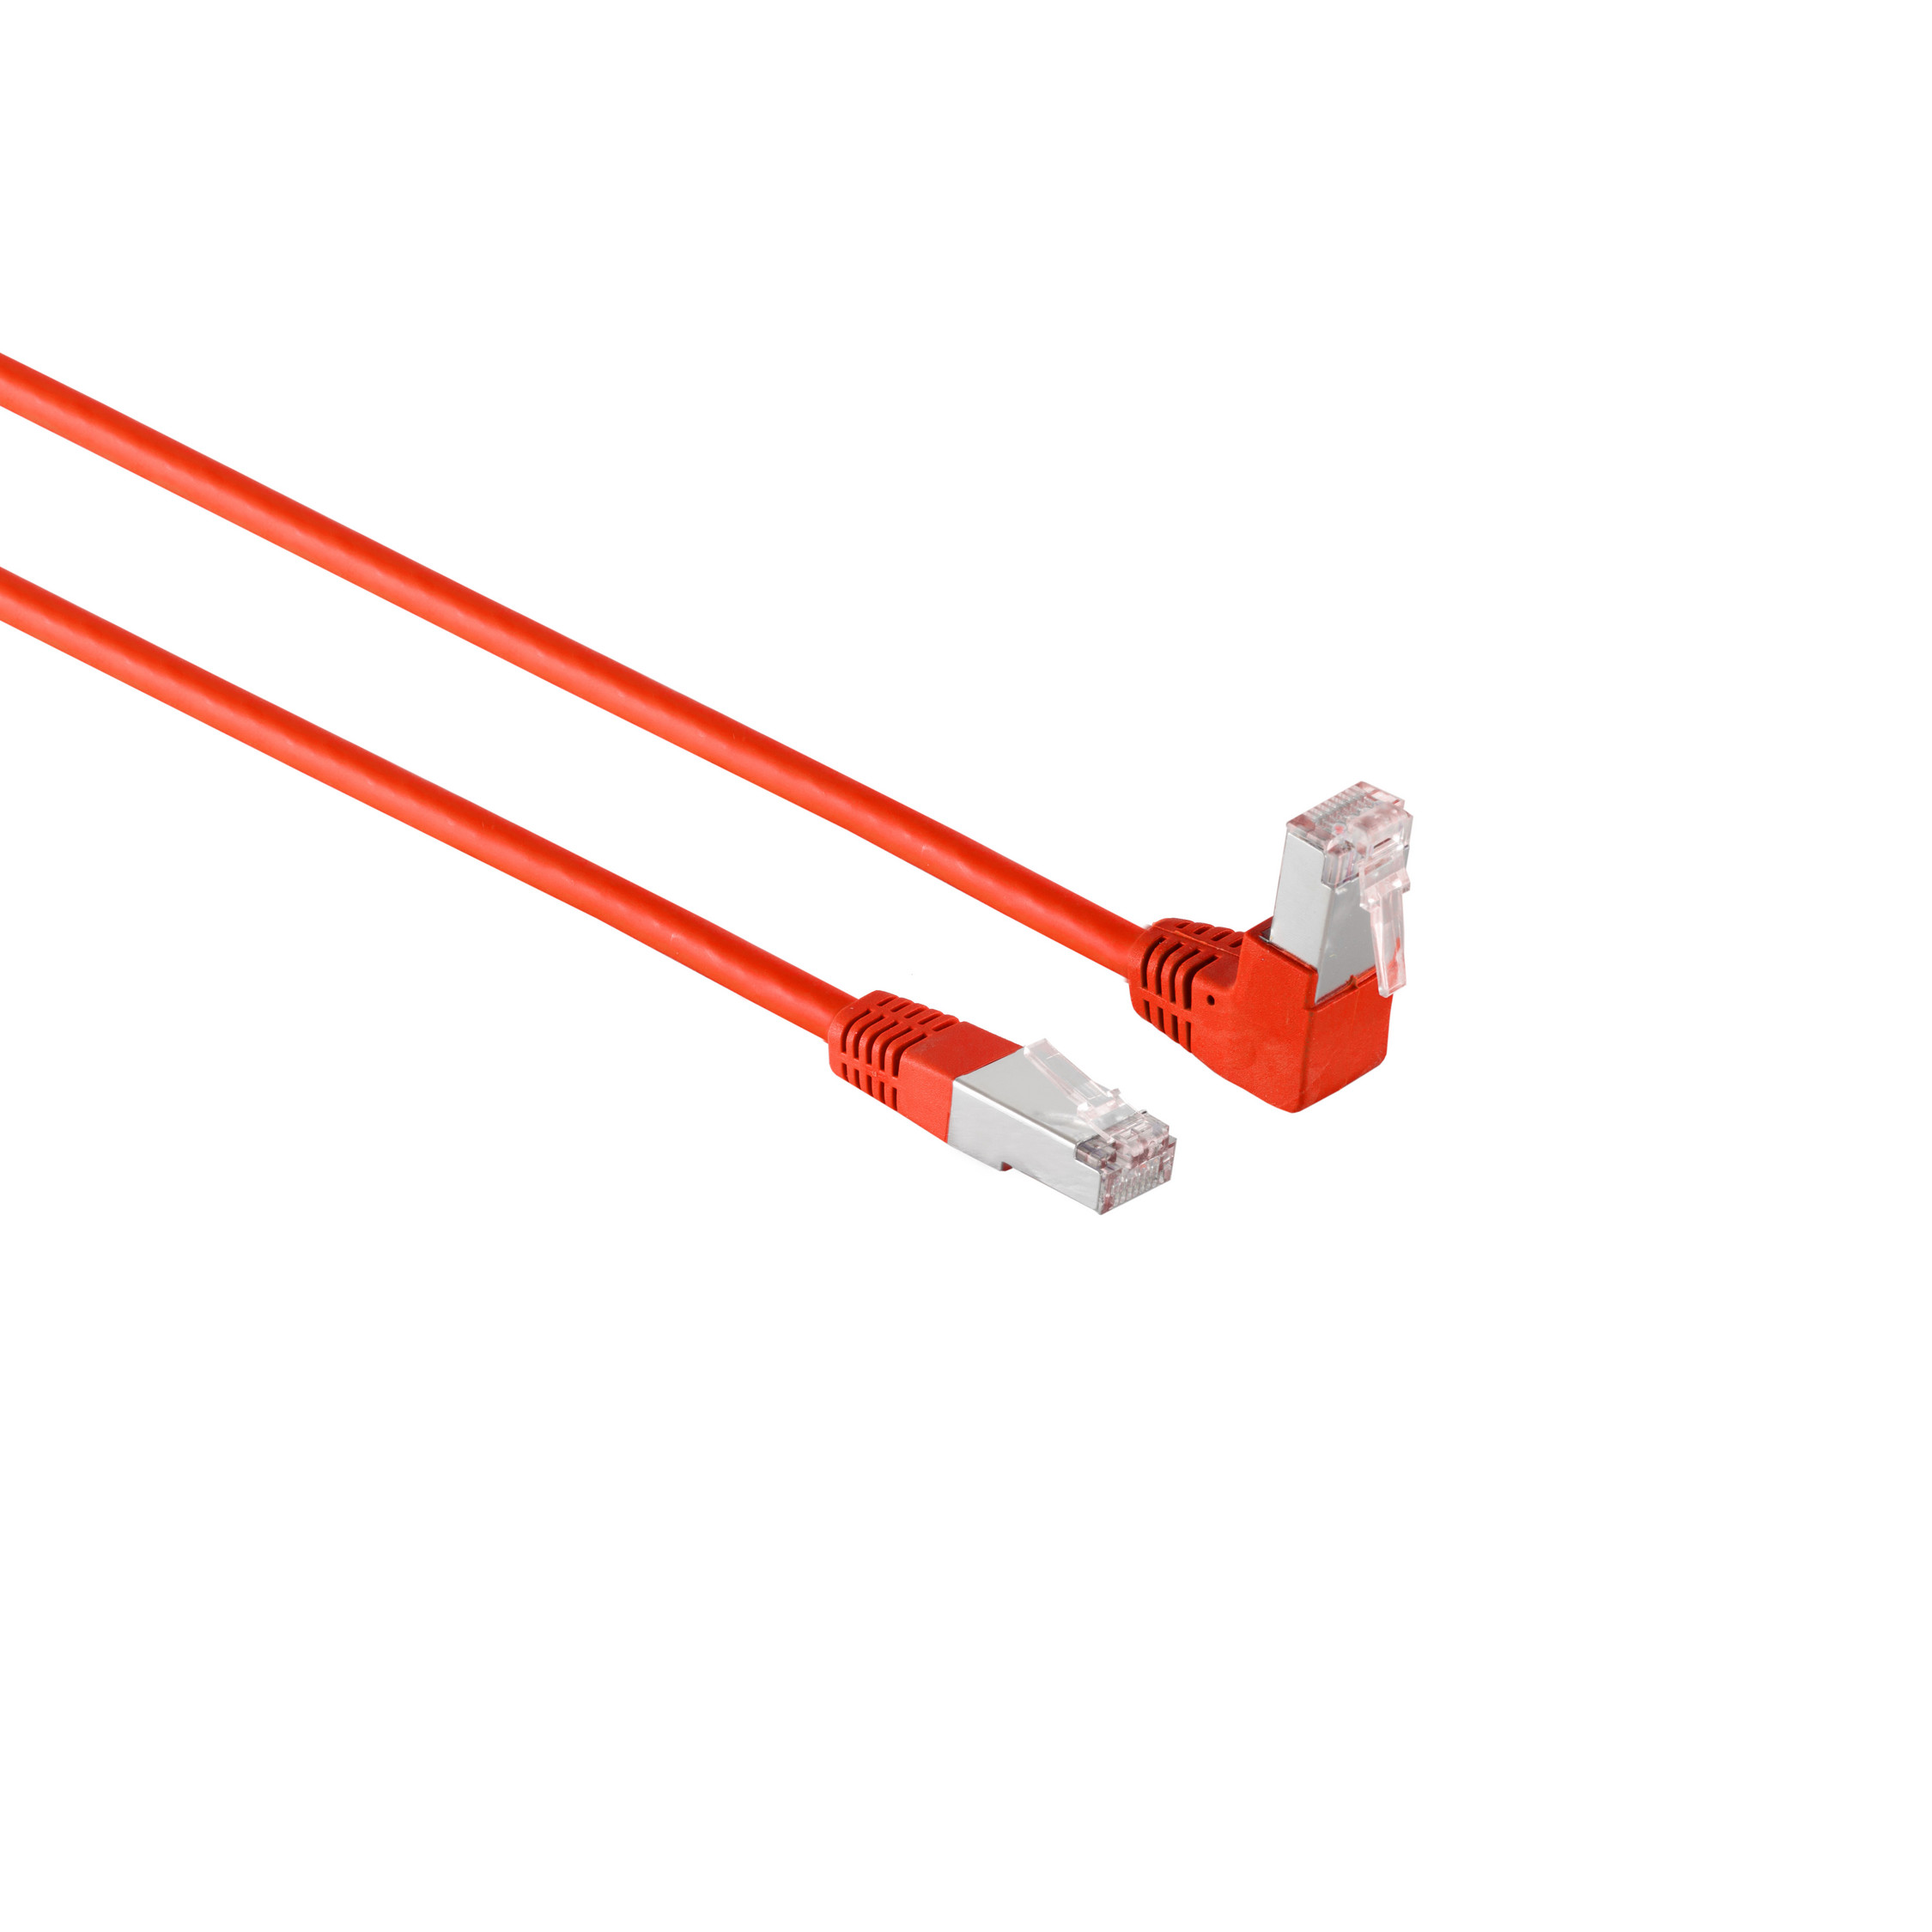 KABELBUDE Kabel cat 6 m rot Winkel-gerade RJ45, S/FTP Patchkabel PIMF 0,25m, 0,25